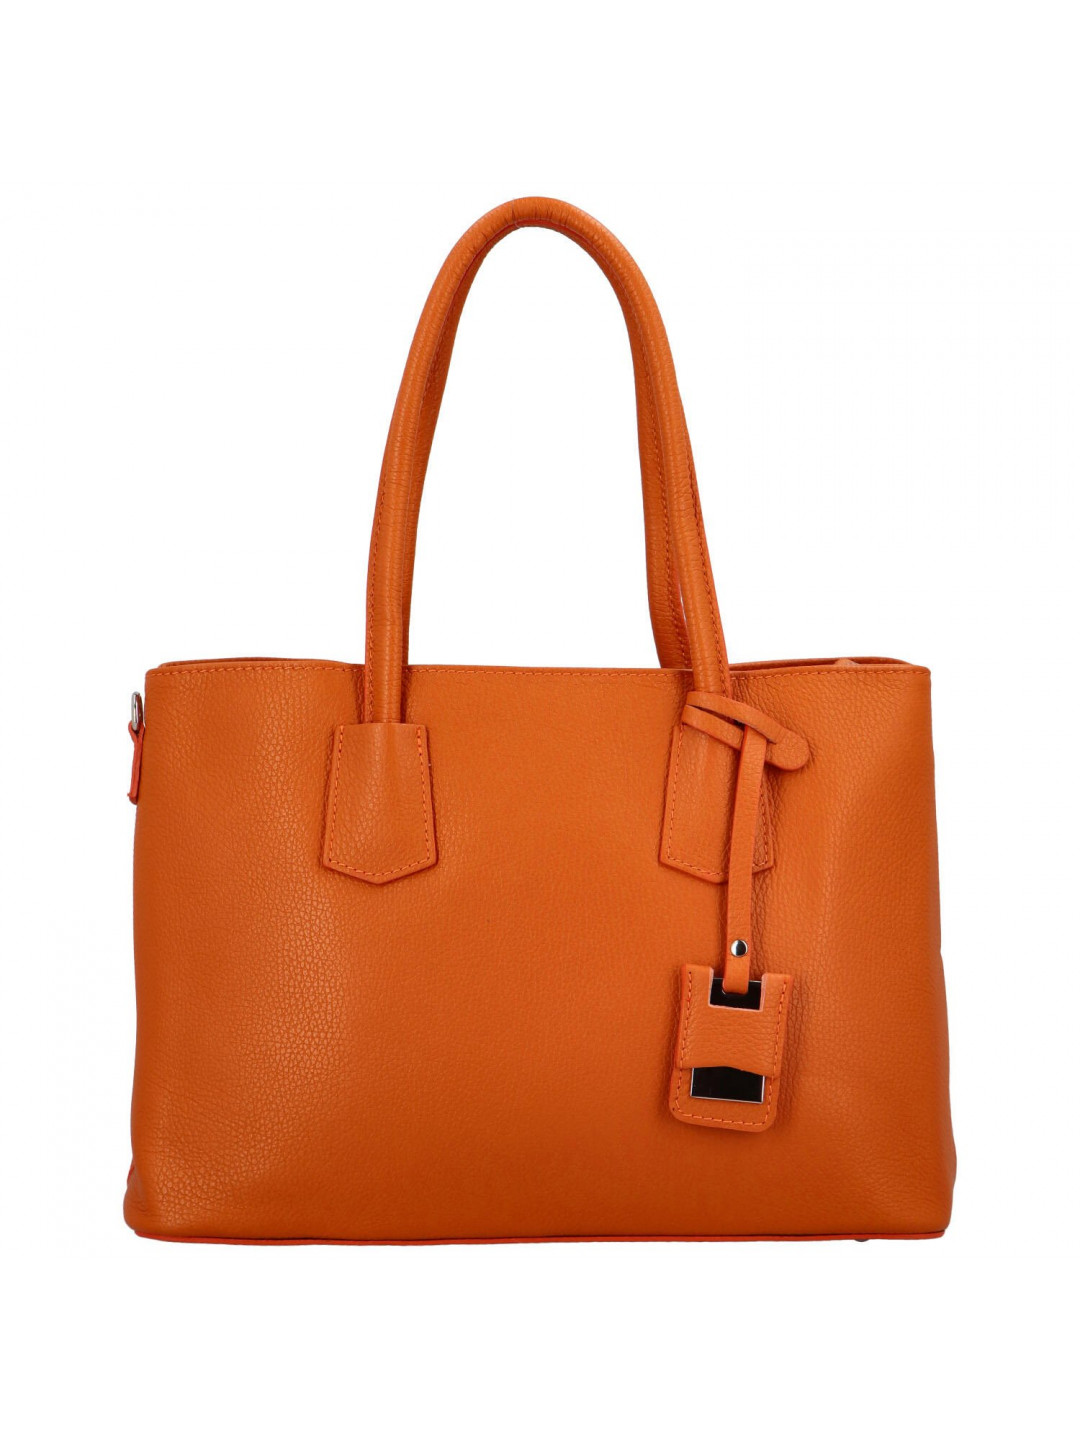 Dámská elegantní kožená kabelka Selena oranžová